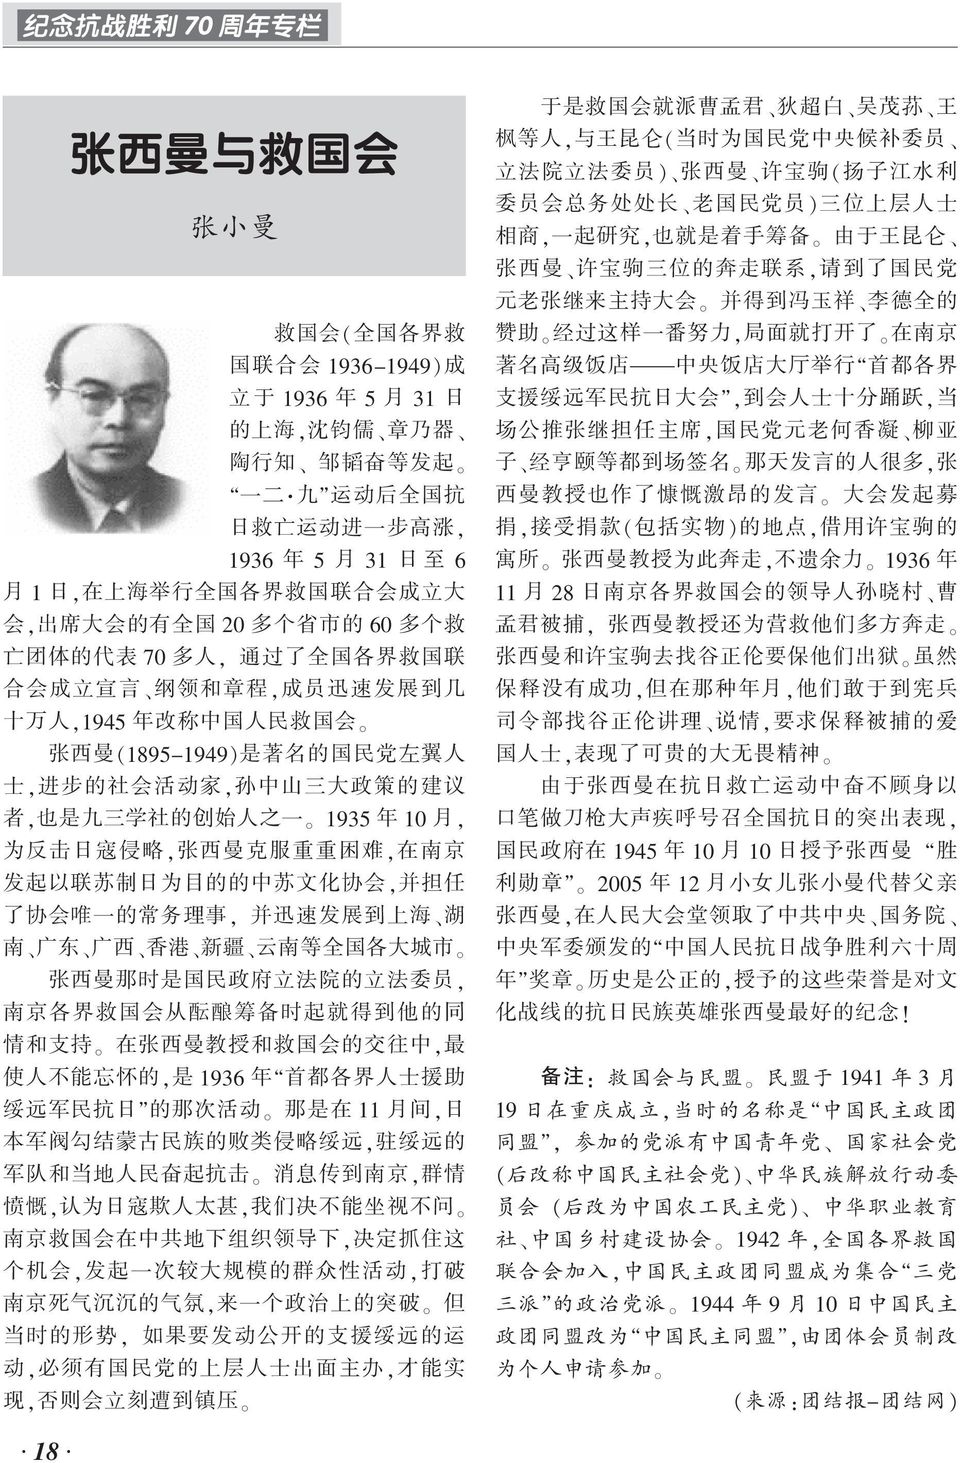 左 翼 人 士, 进 步 的 社 会 活 动 家, 孙 中 山 三 大 政 策 的 建 议 者, 也 是 九 三 学 社 的 创 始 人 之 一 1935 年 10 月, 为 反 击 日 寇 侵 略, 张 西 曼 克 服 重 重 困 难, 在 南 京 发 起 以 联 苏 制 日 为 目 的 的 中 苏 文 化 协 会, 并 担 任 了 协 会 唯 一 的 常 务 理 事, 并 迅 速 发 展 到